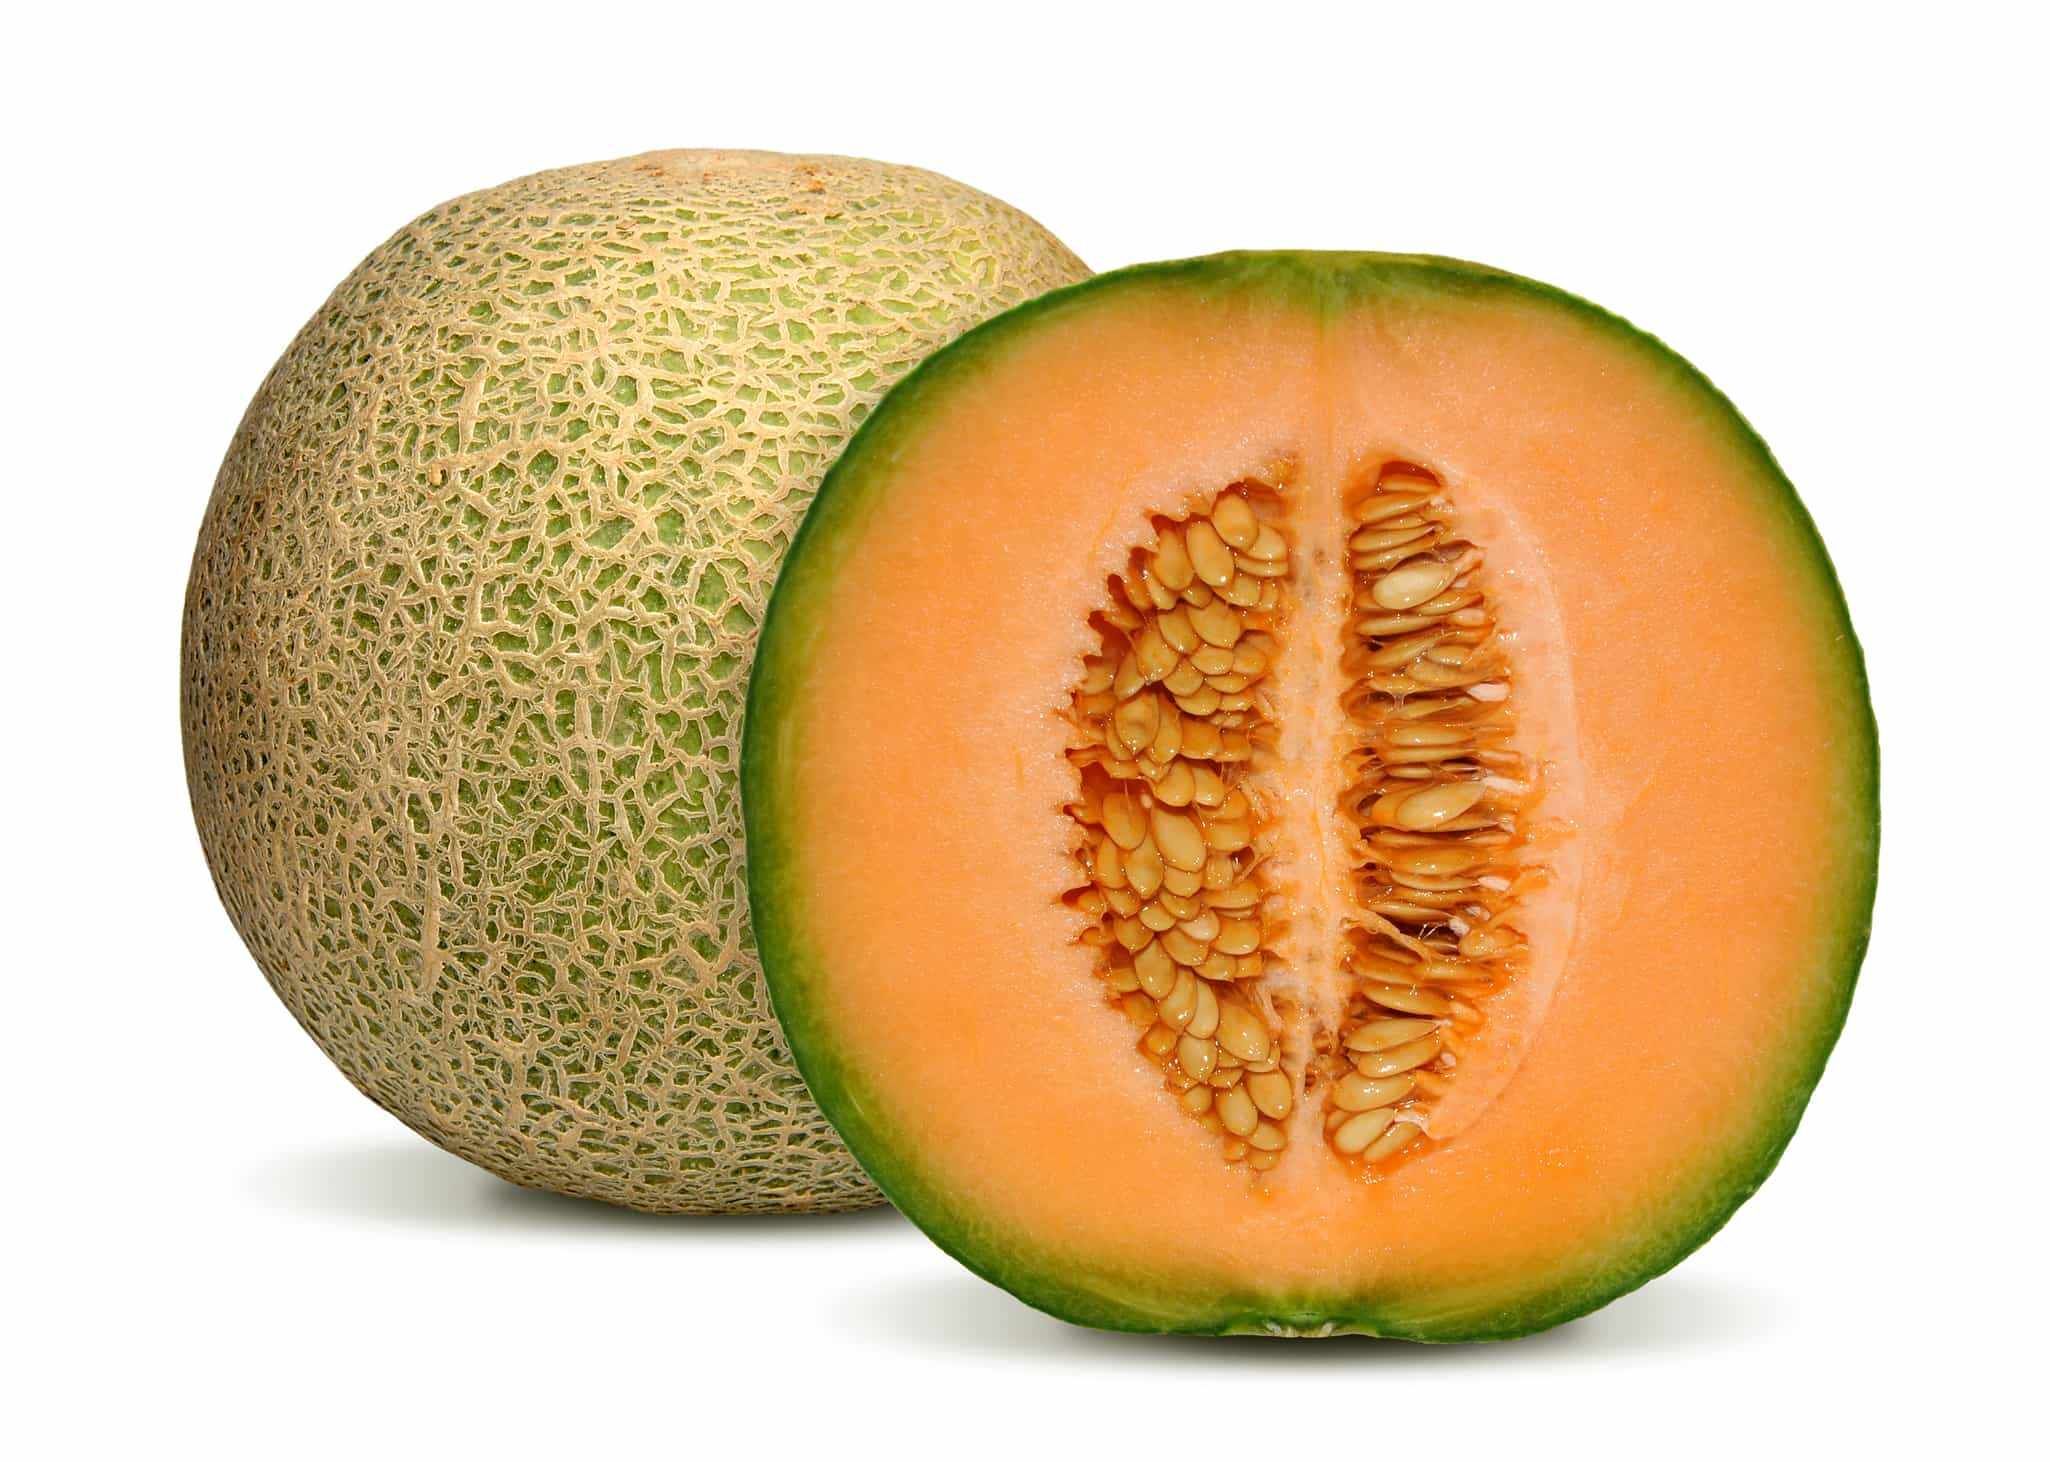 Melon Cantaloupe grön ca1000g-1200g/per Styck. Pris på Styck- Brasilien